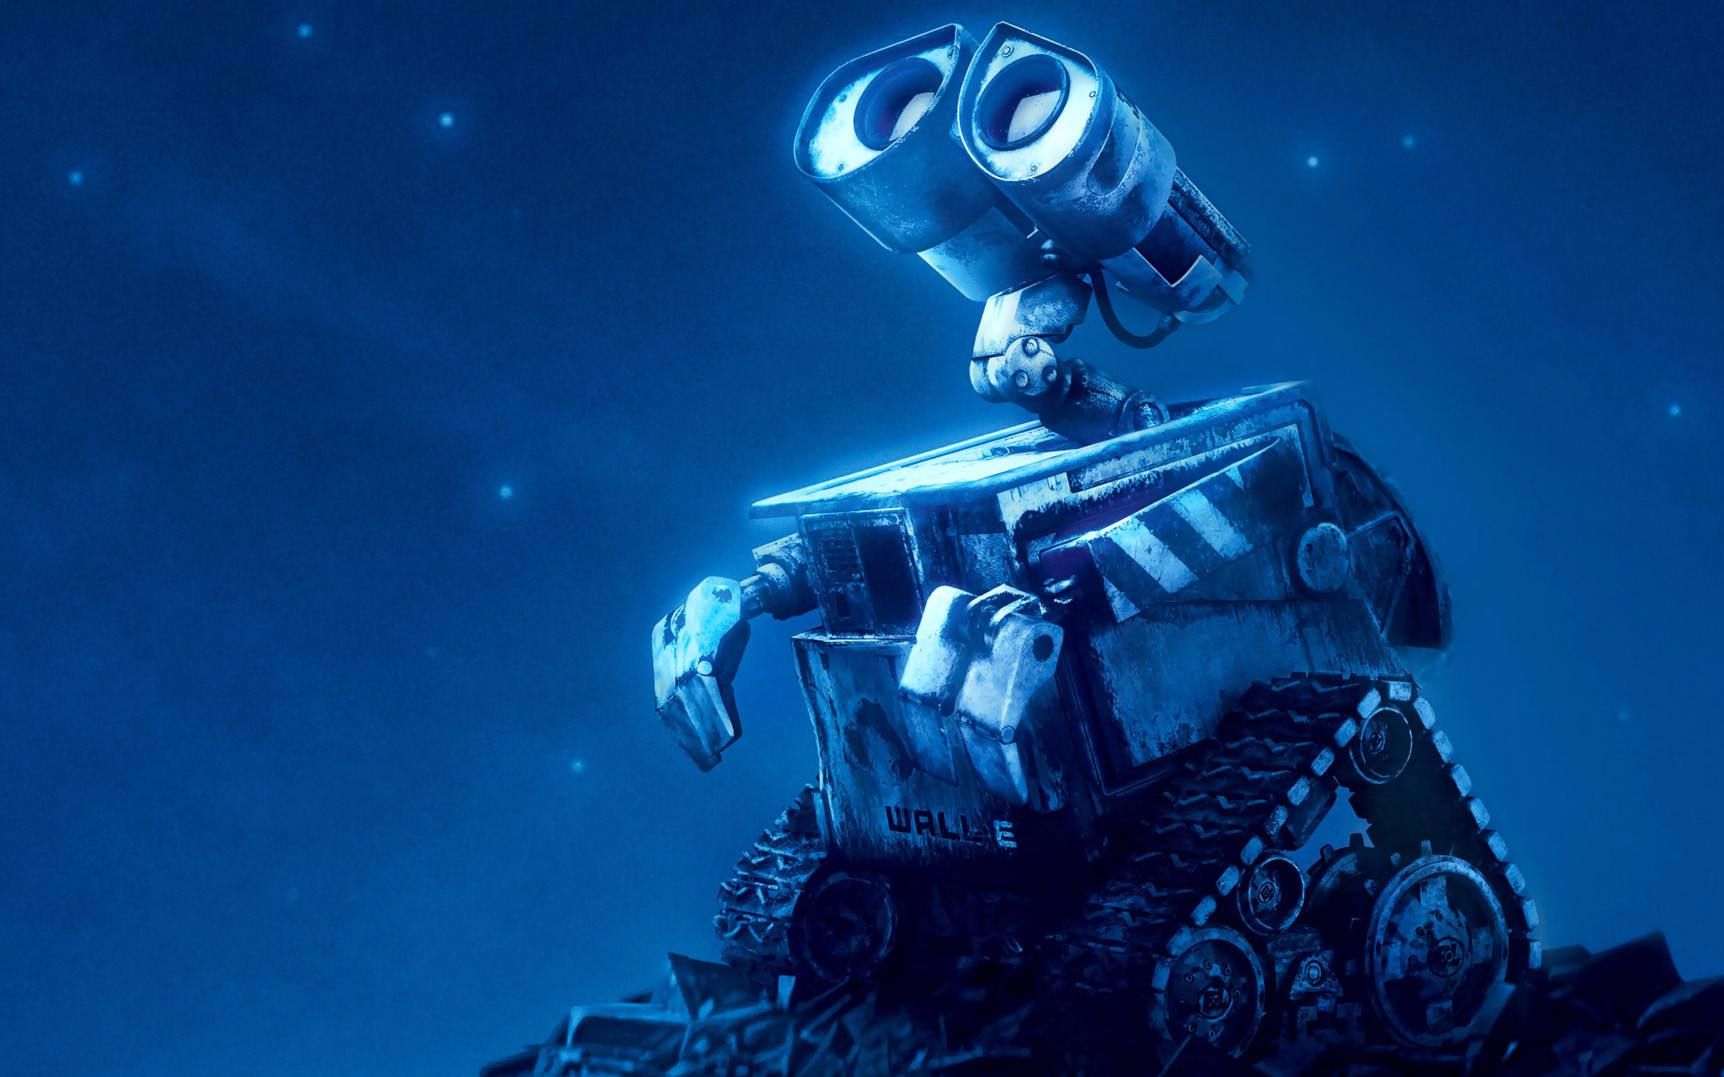 未来战争机器人,服务机器人3D模型欣赏_CG插画_绘画艺术-摩尔网CGMOL